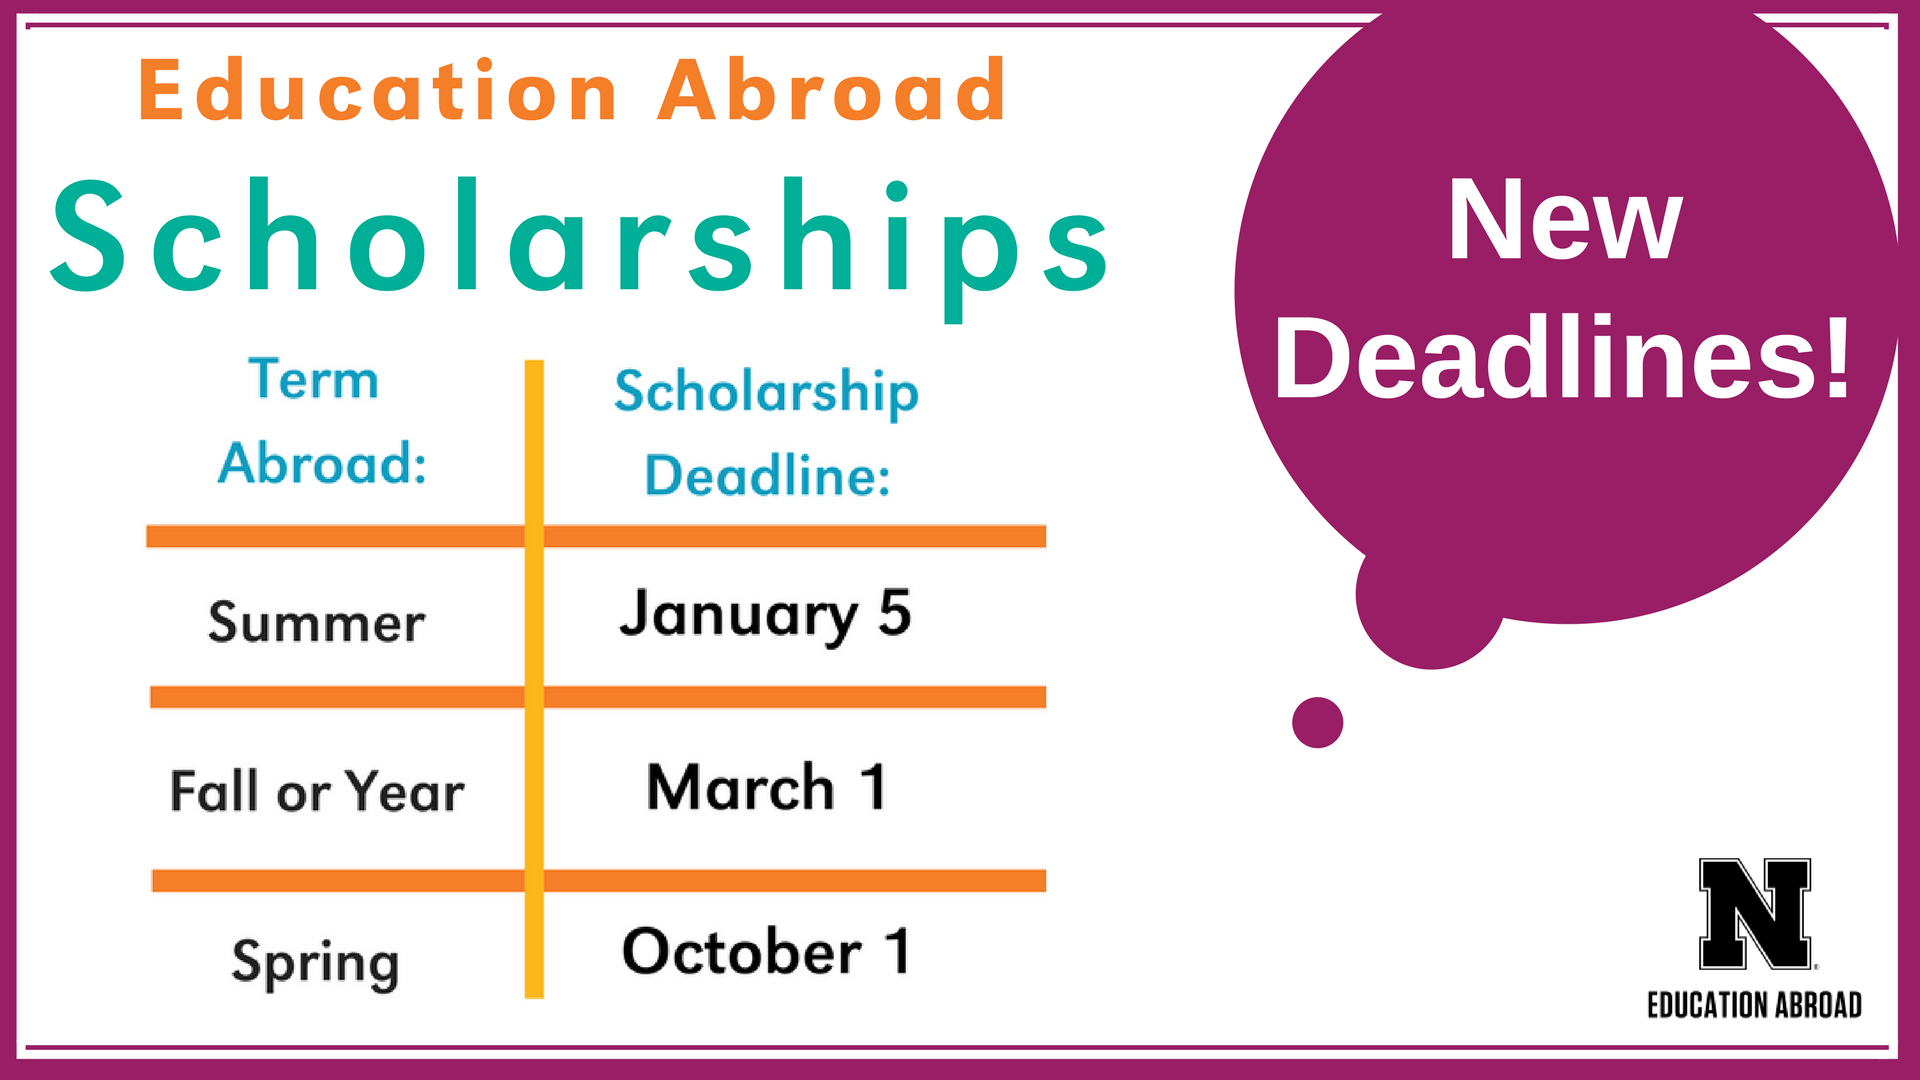 Education Abroad Scholarships NEW Deadlines! Announce University of NebraskaLincoln